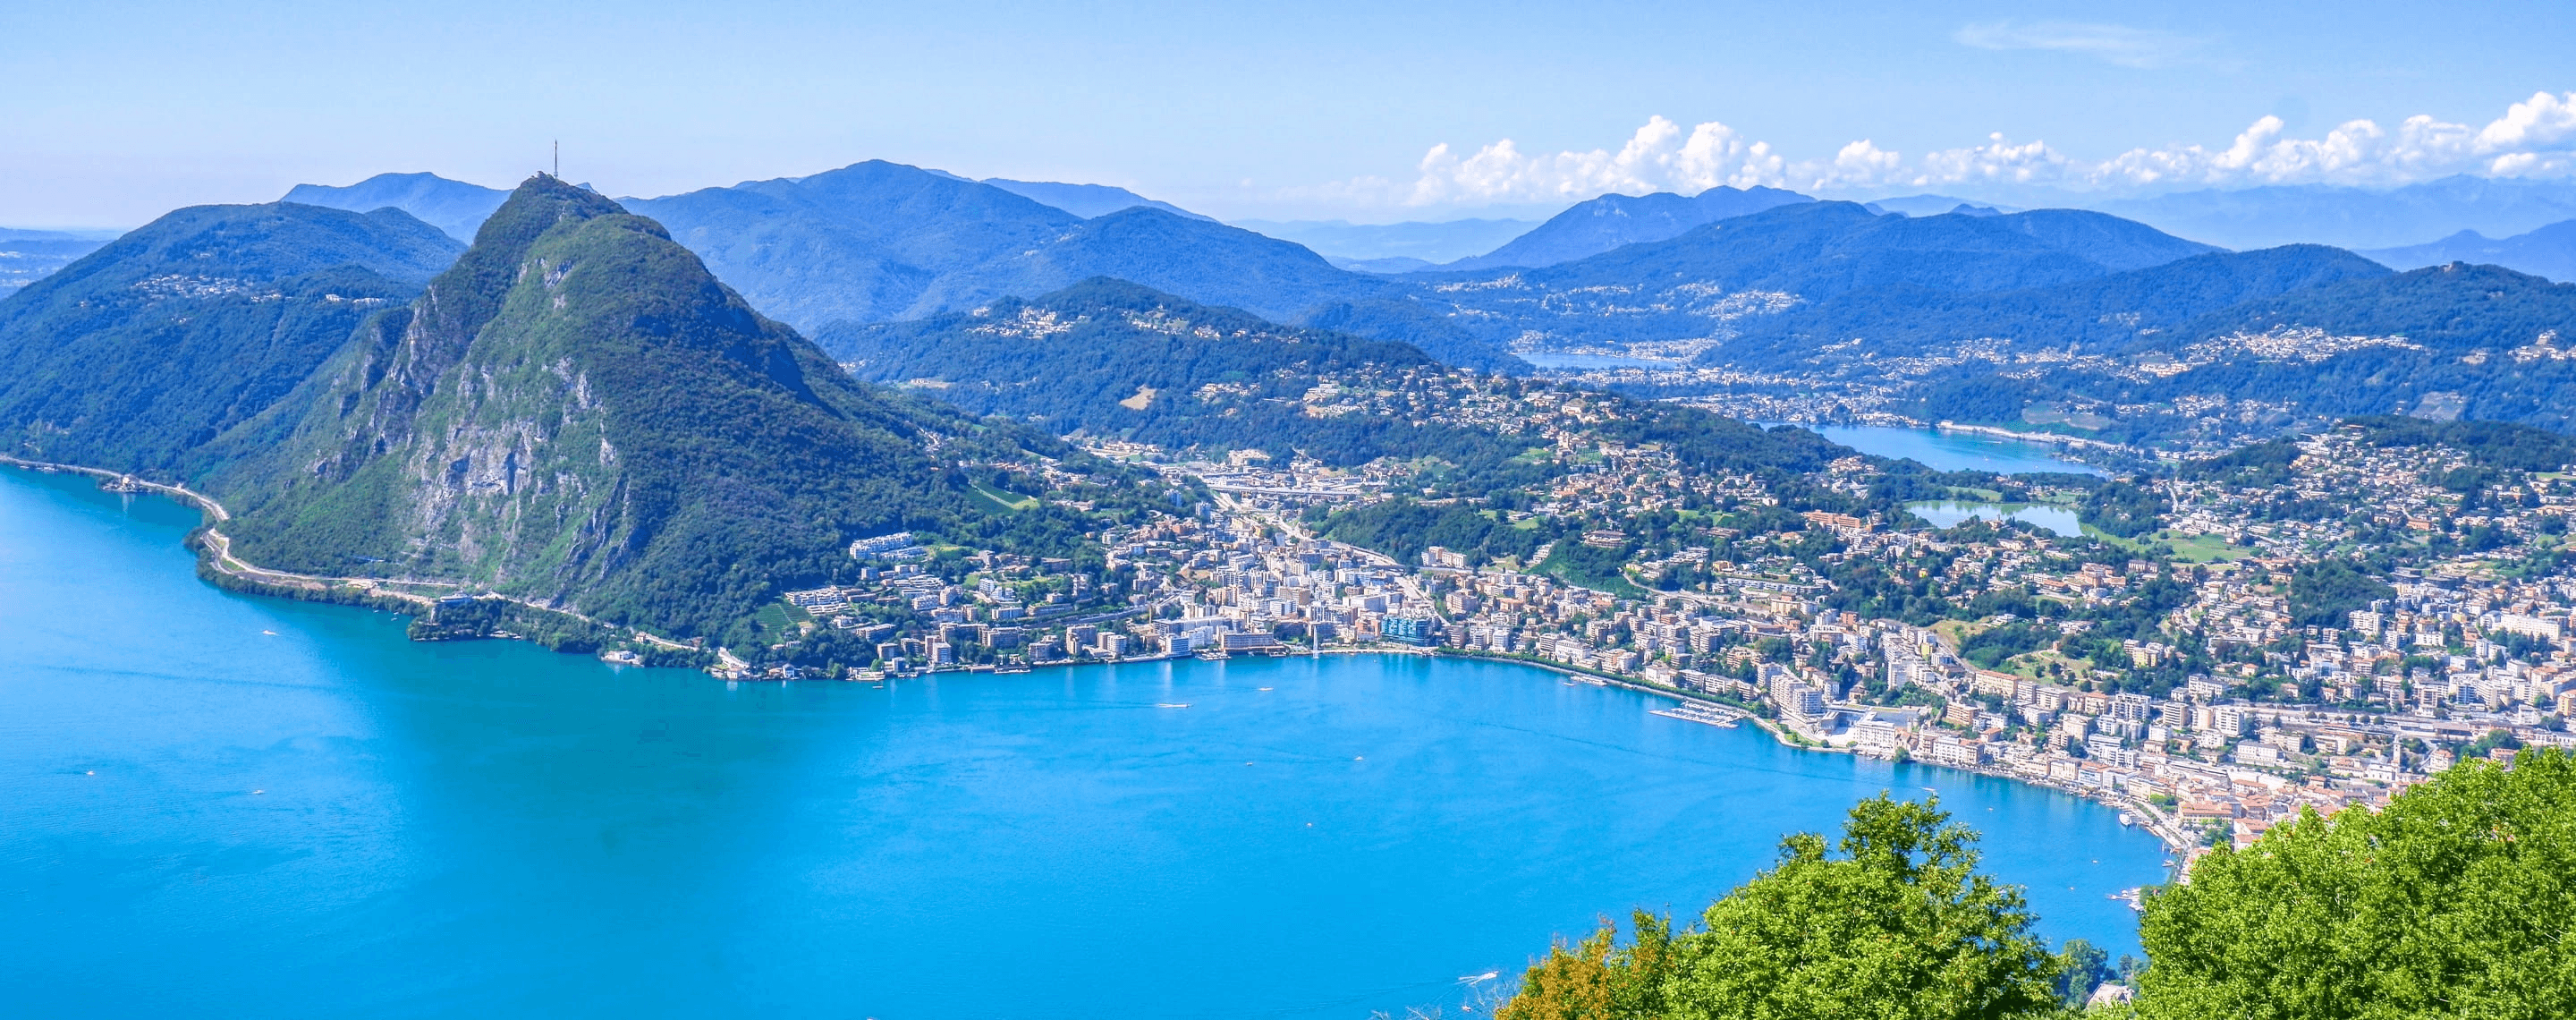 Panoramablick auf Lugano, den Luganersee und die Berge, Schweiz